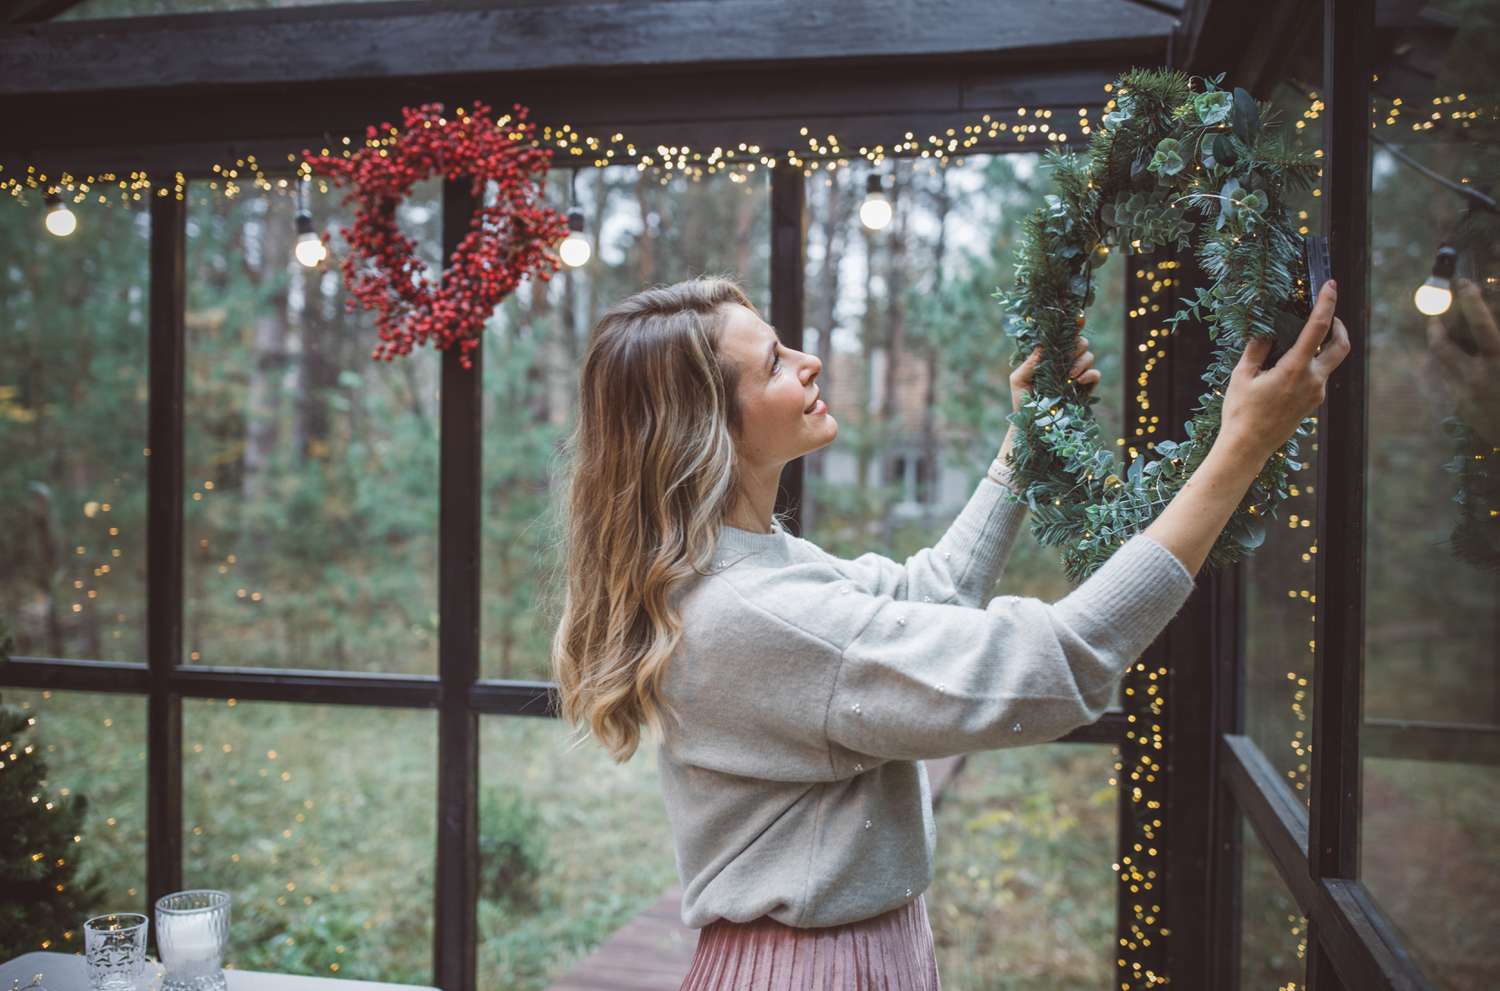 A woman hangs a wreath on a window